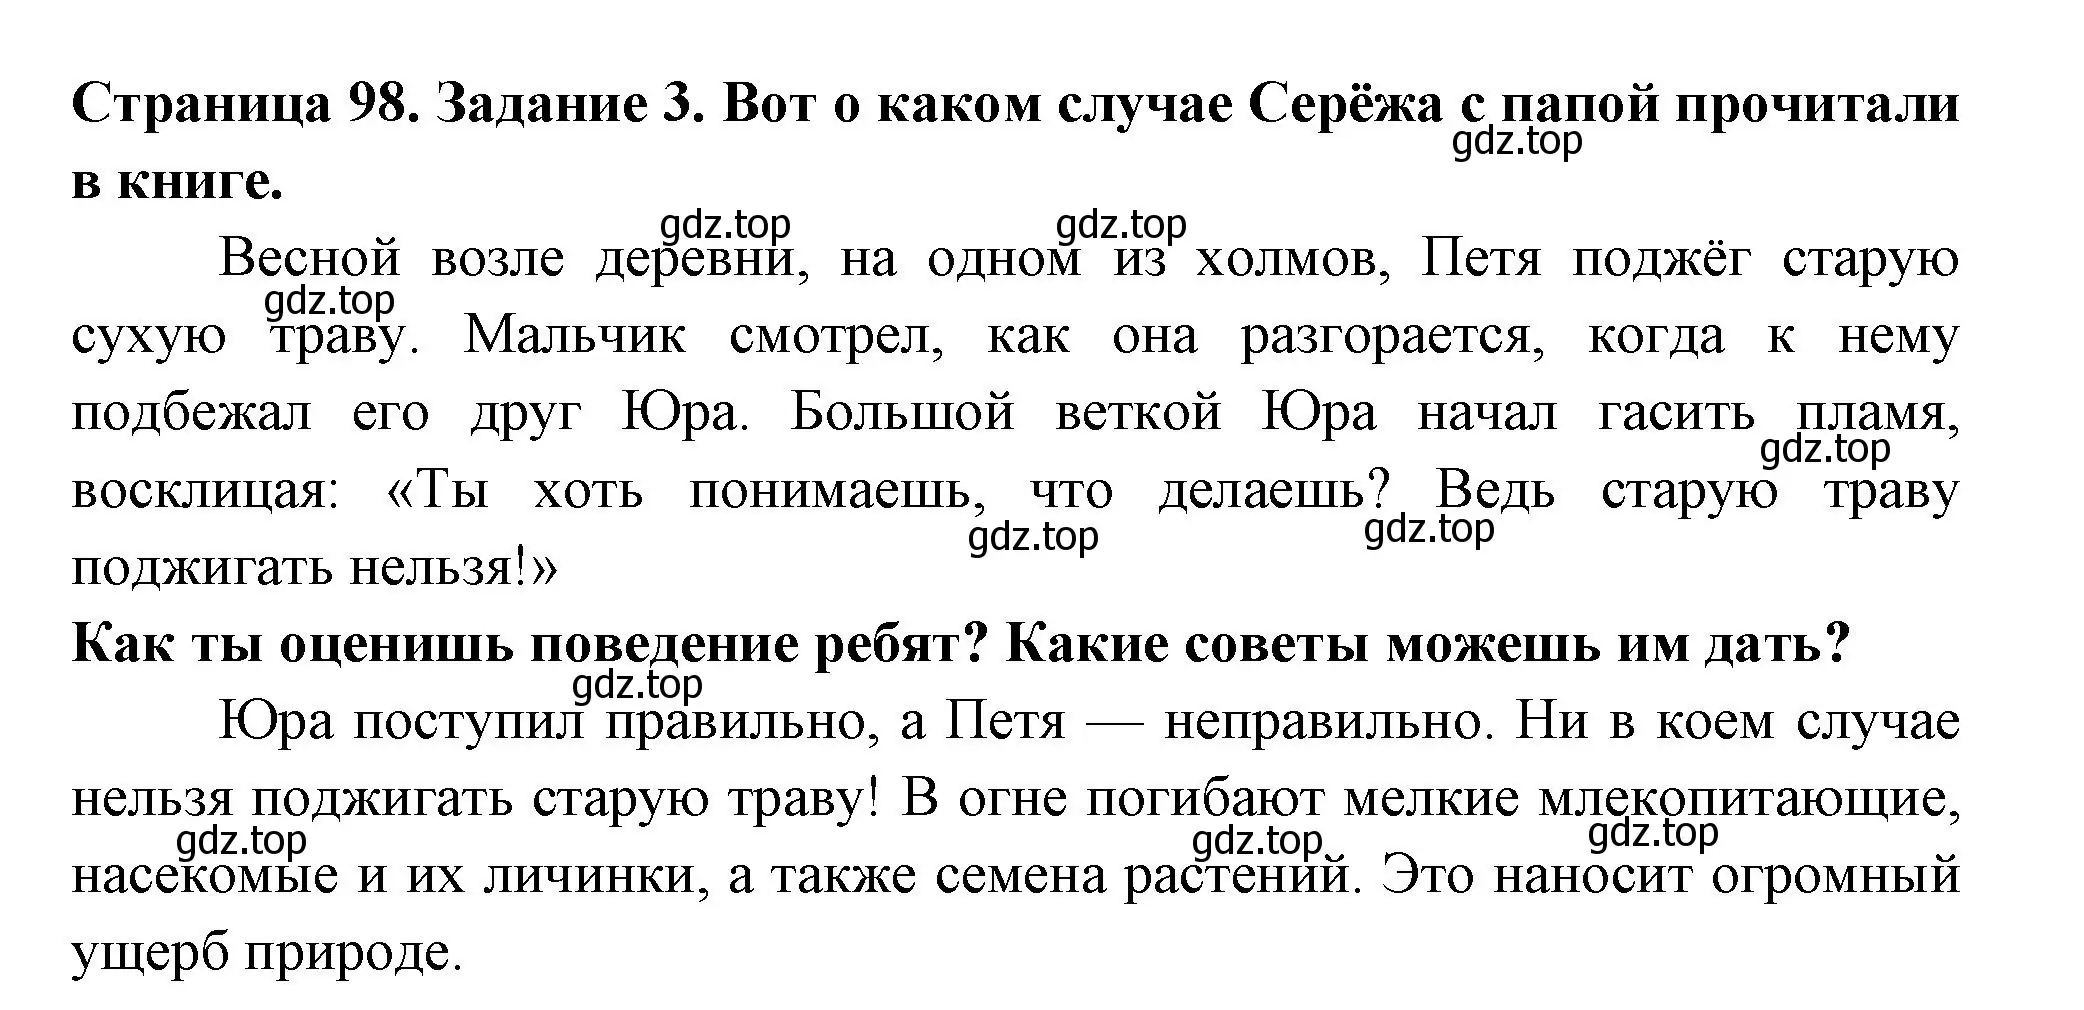 Решение номер 3 (страница 98) гдз по окружающему миру 4 класс Плешаков, Крючкова, проверочные работы